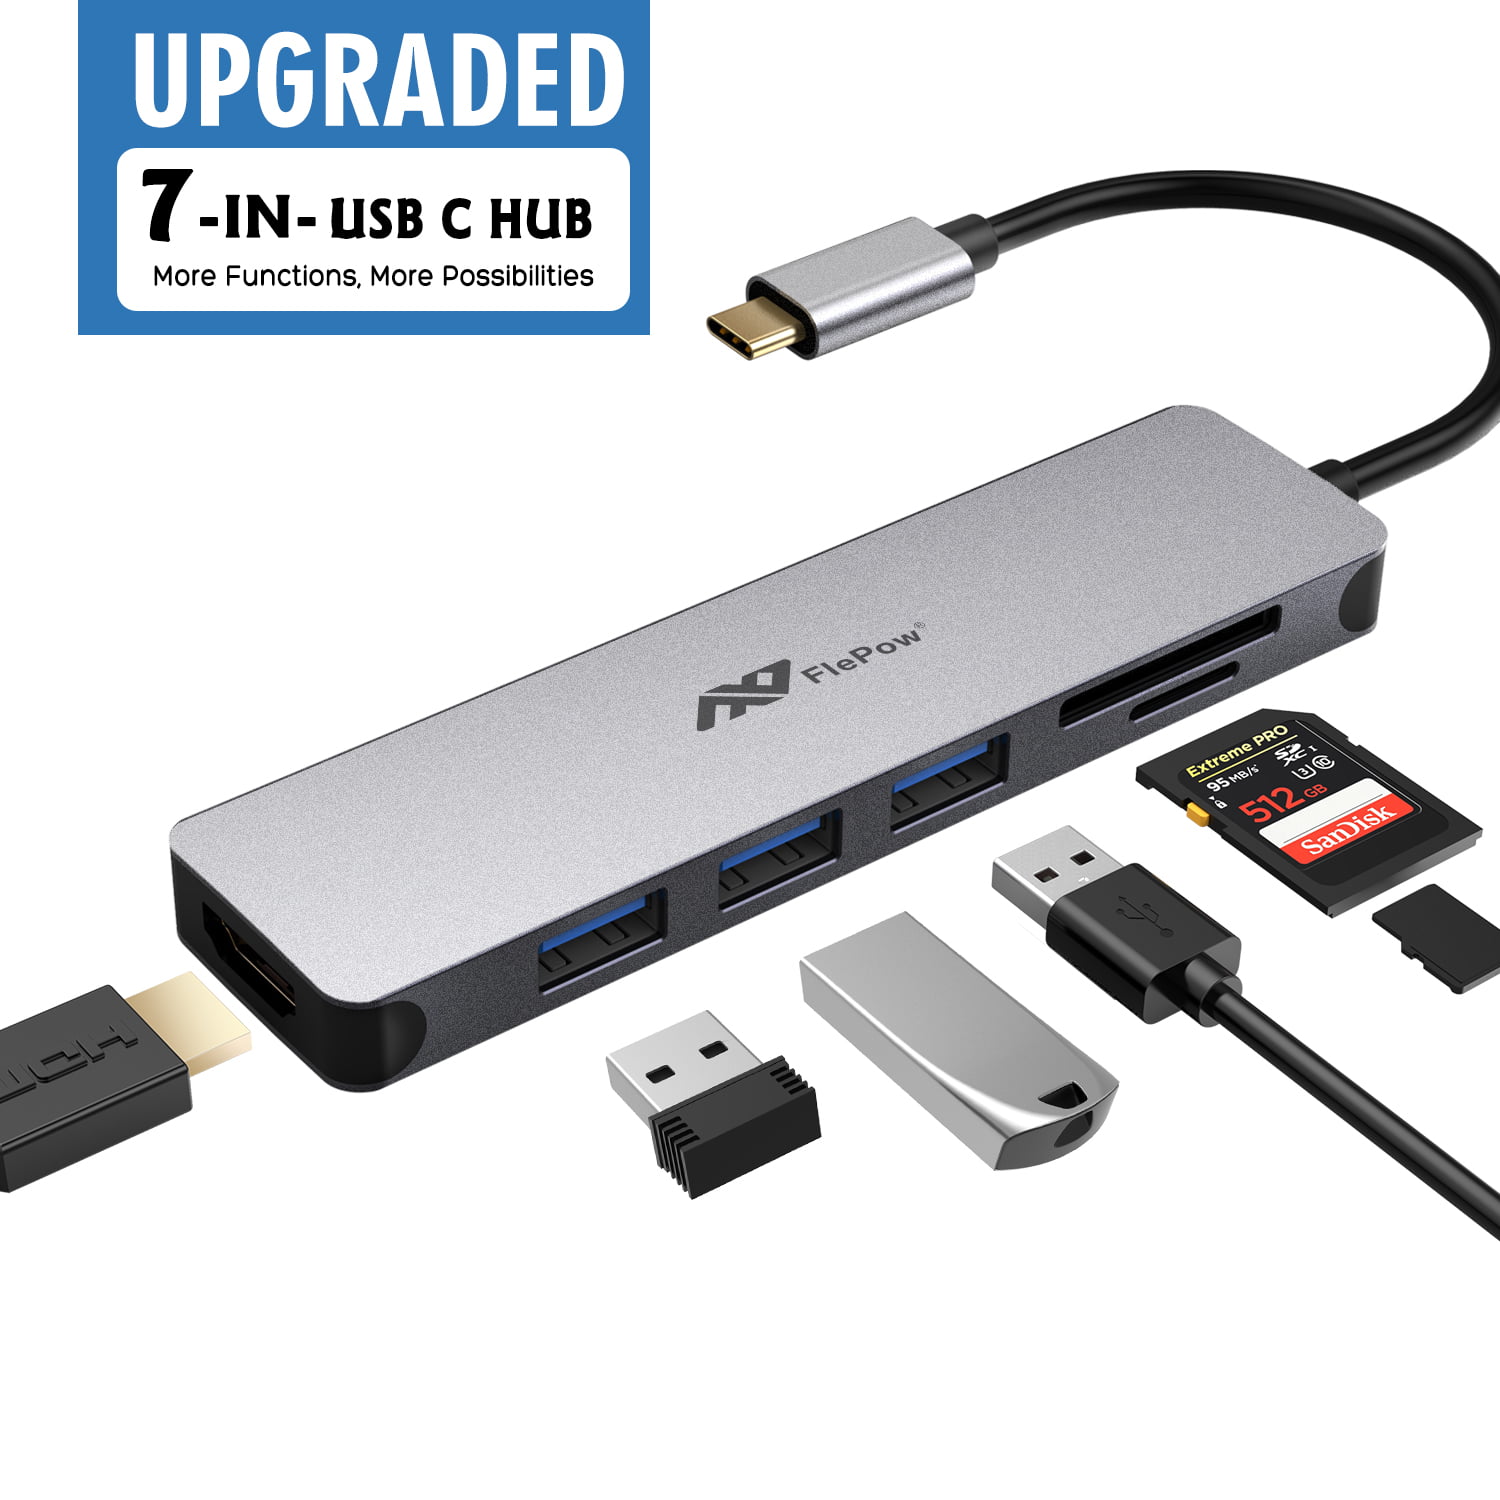 WANGSHUMIN-US USB-C HUB USB 3.0 HDMI Multifunction Adapter